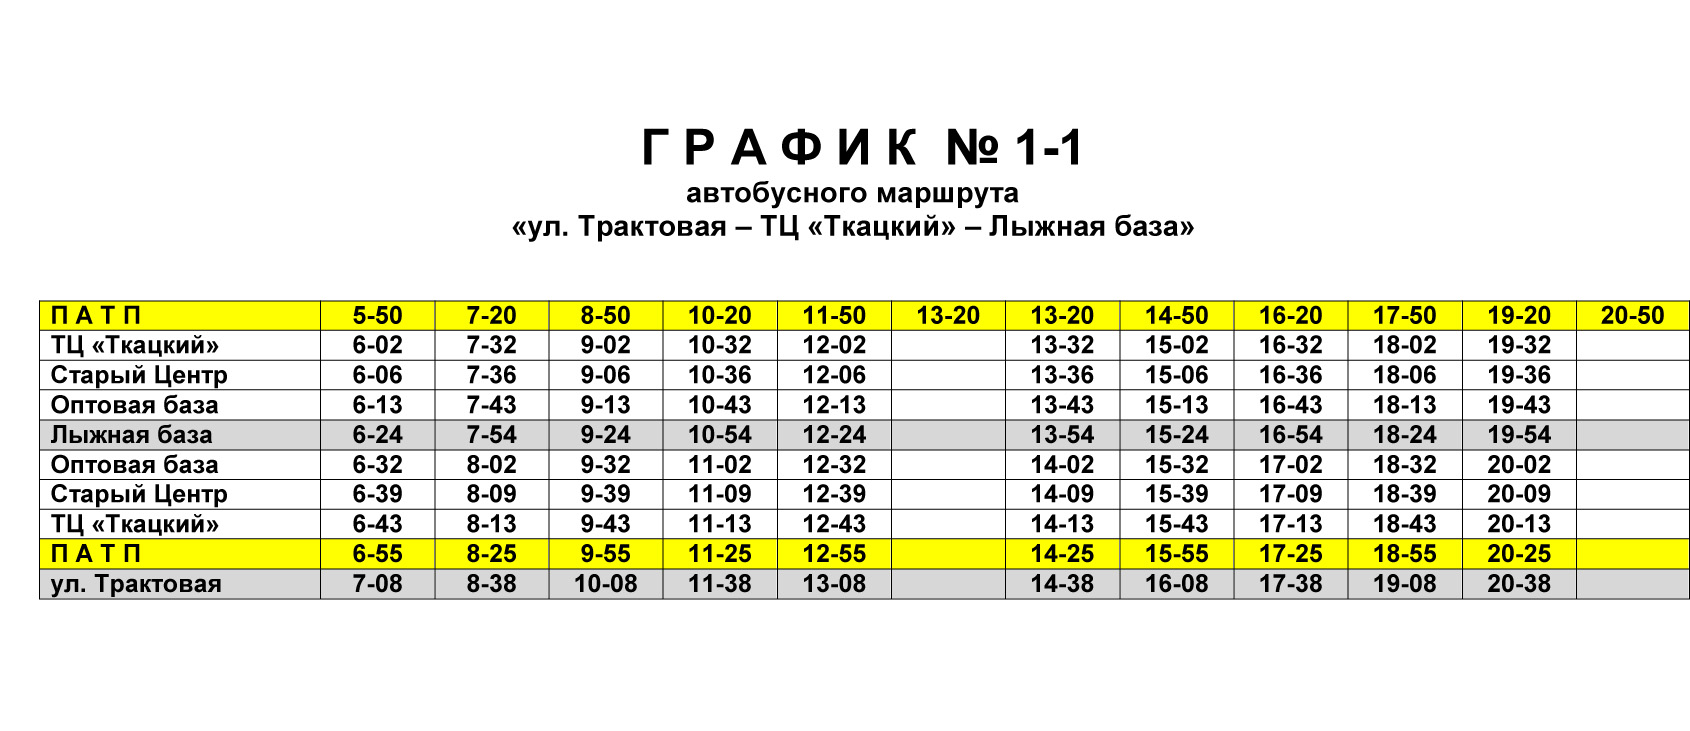 Расписание автобуса 121 молодежная лесные